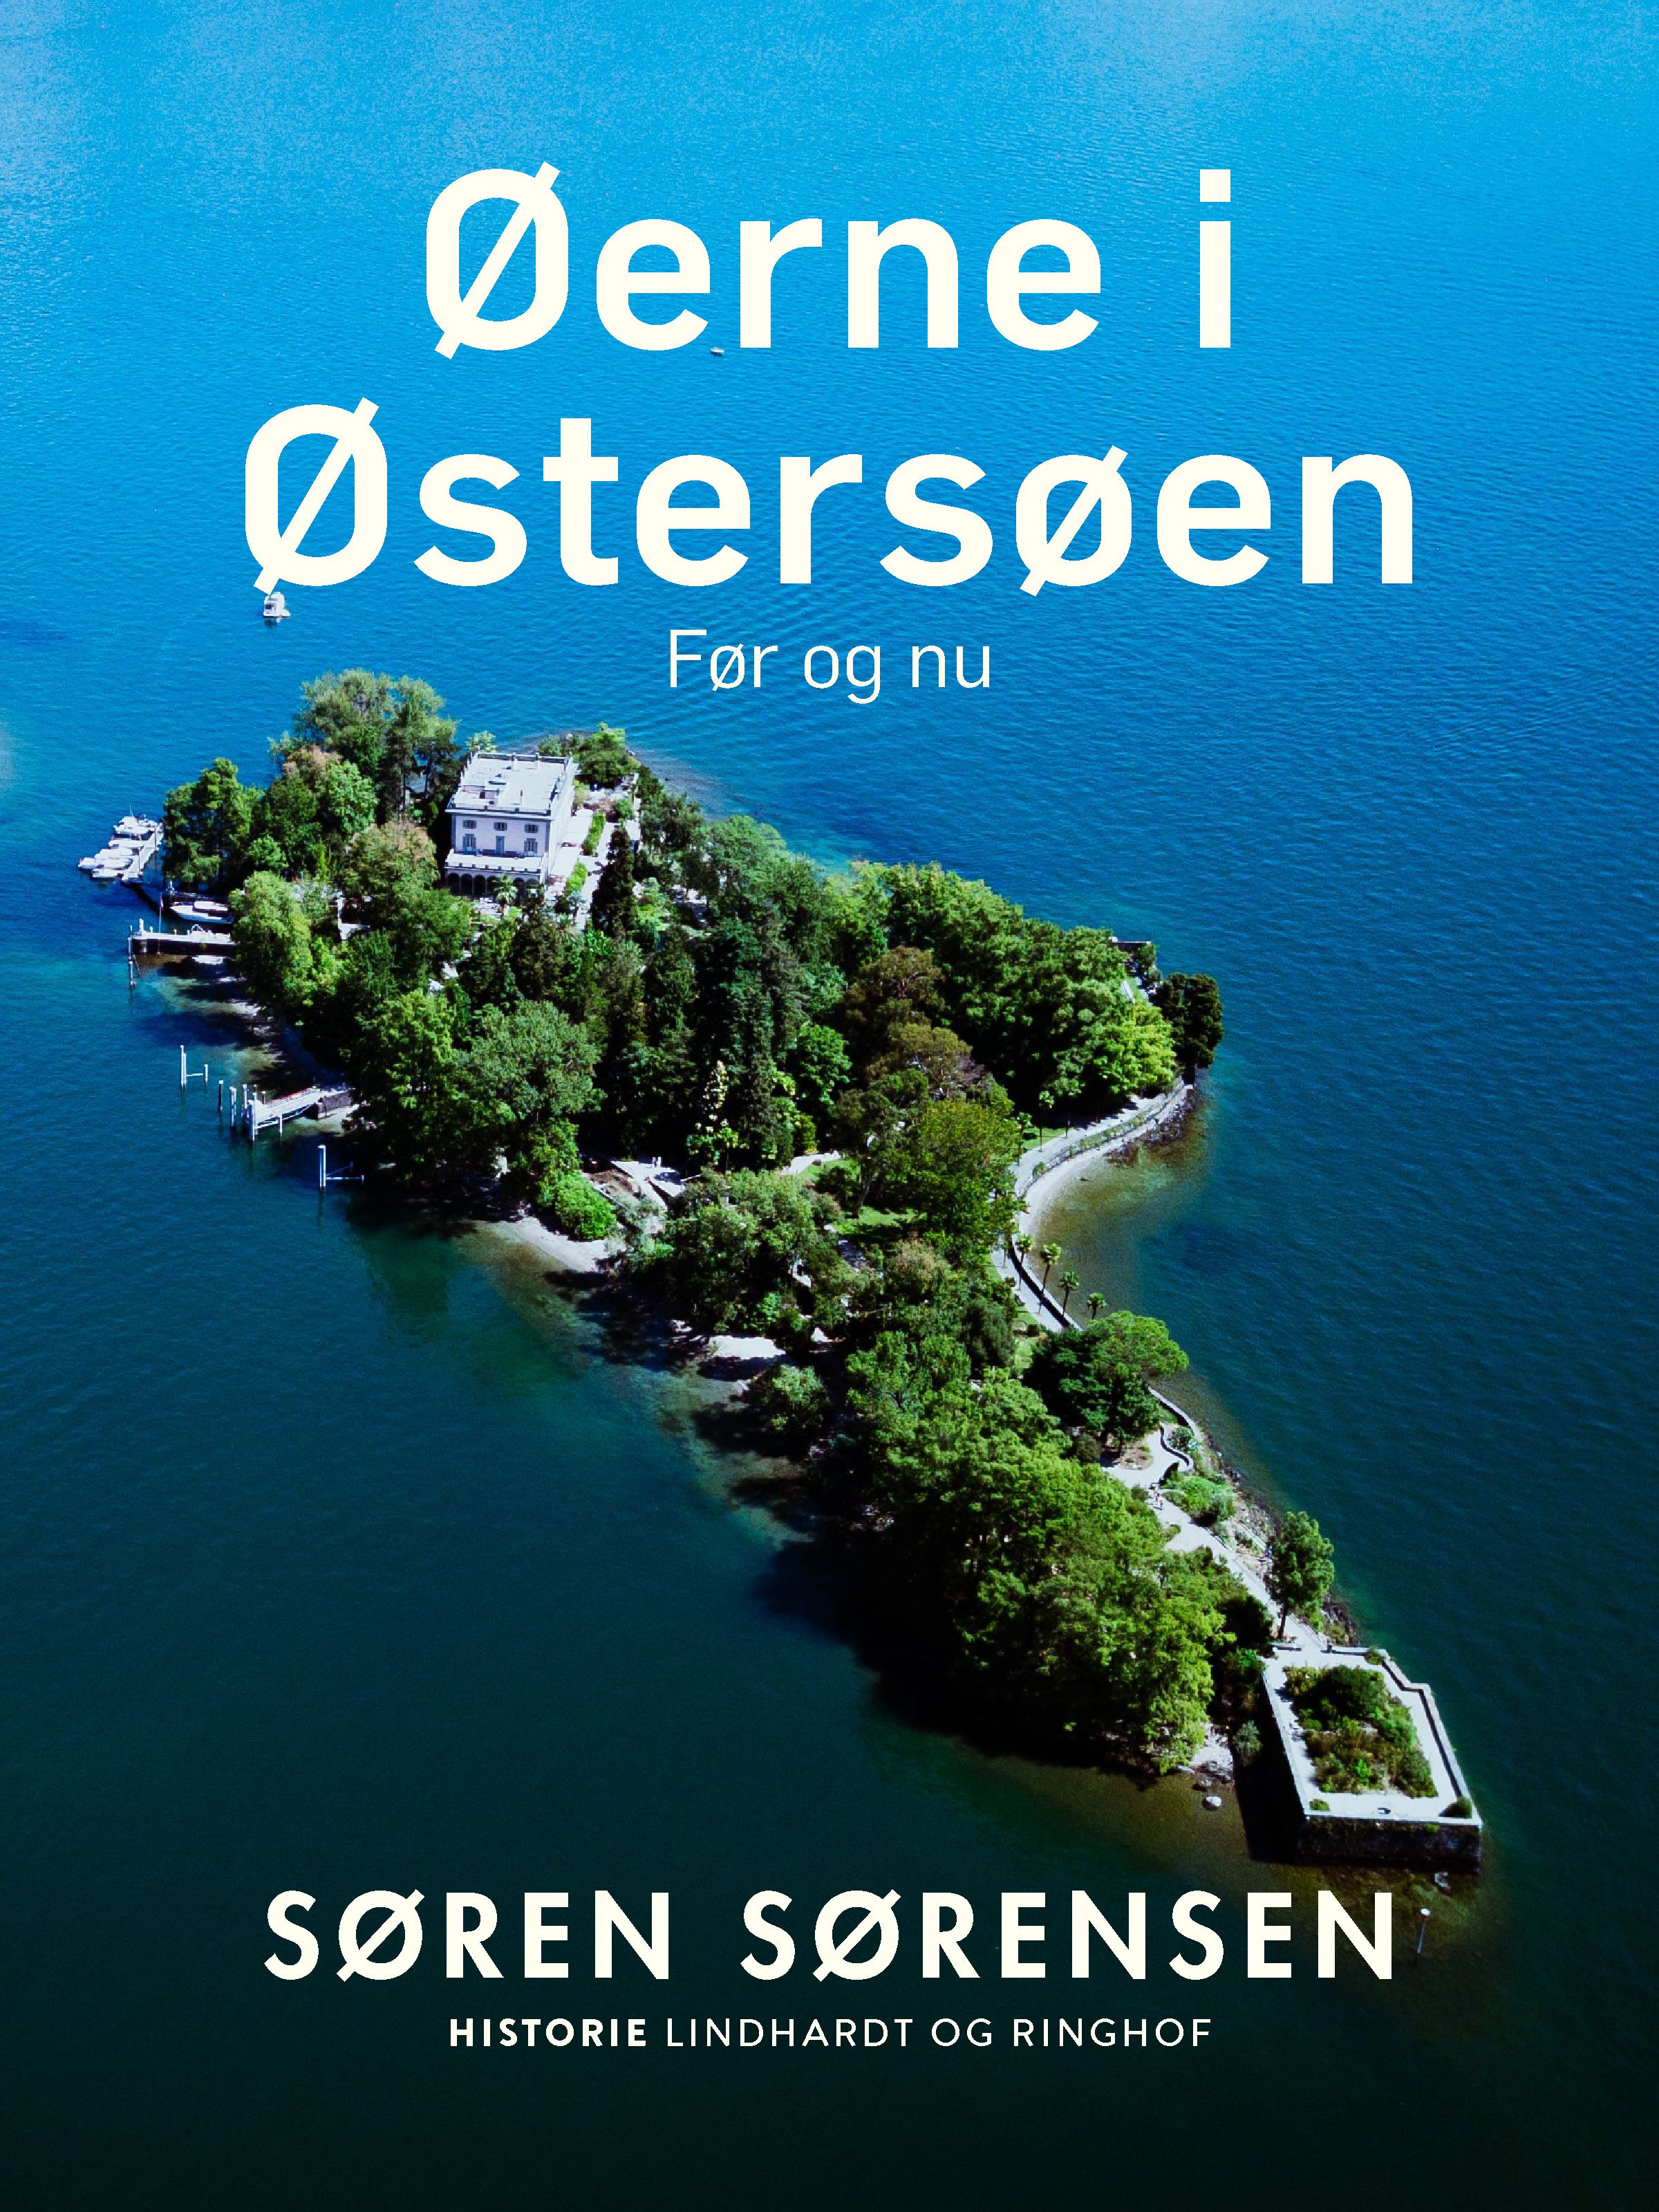 Øerne i Østersøen. Før og nu, e-bok av Søren Sørensen